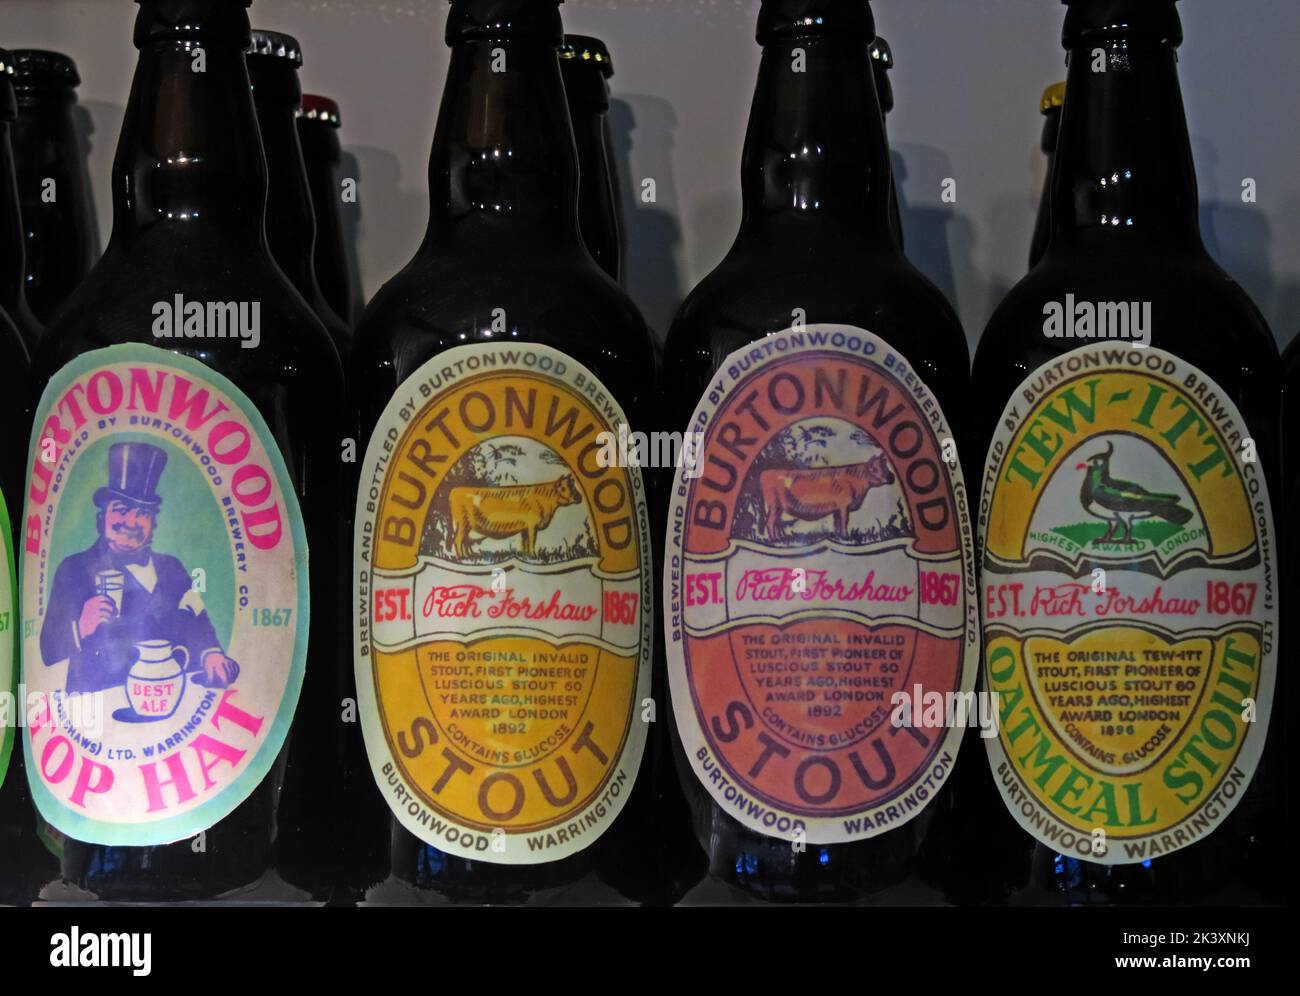 Bières Burtonwood historiques, stout et bières, en bouteilles, Warrington, Cheshire, Angleterre, Royaume-Uni Banque D'Images